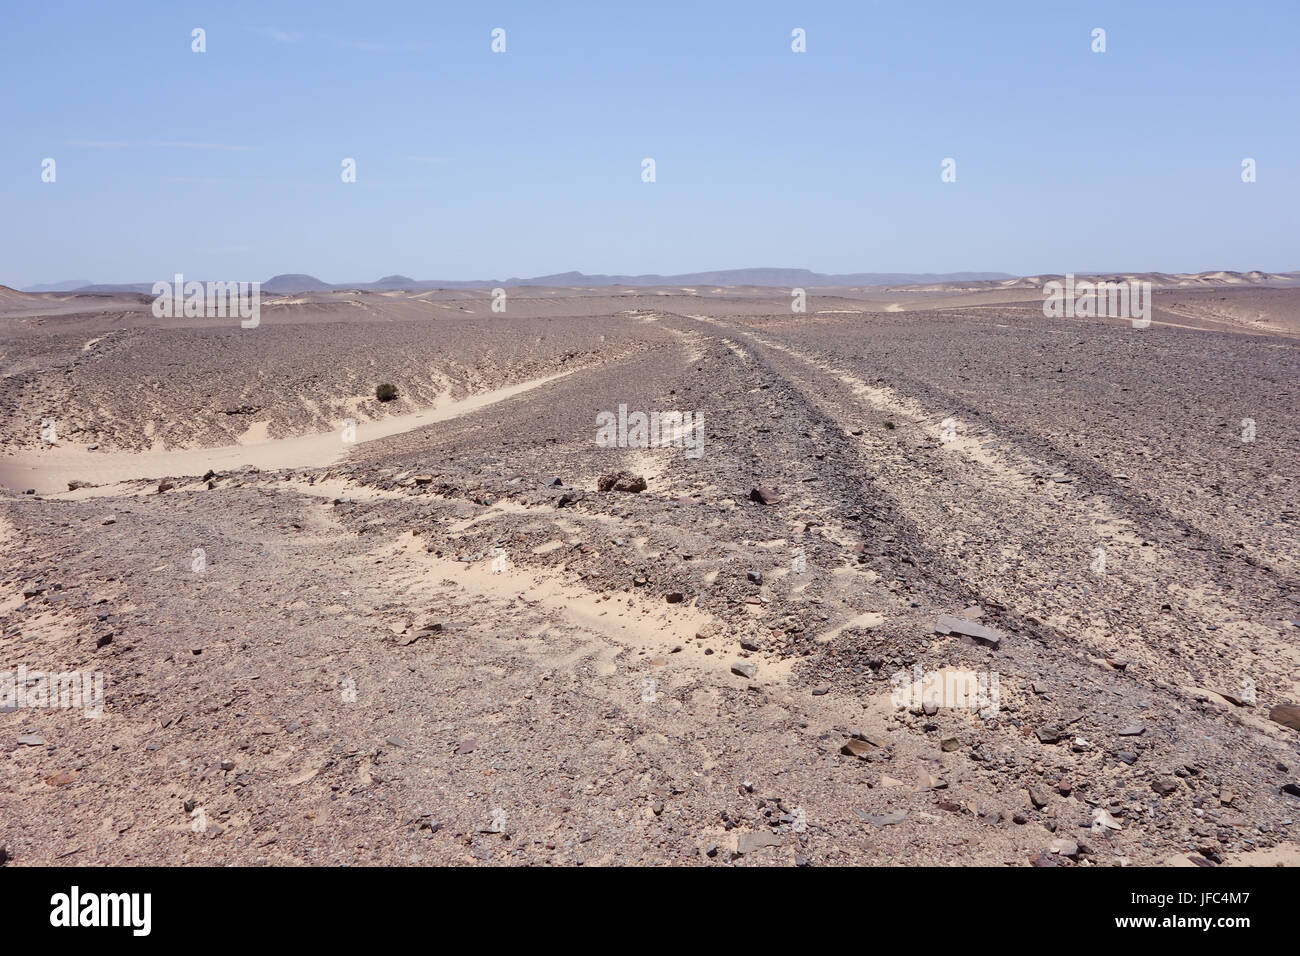 Namibian landscape Stock Photo